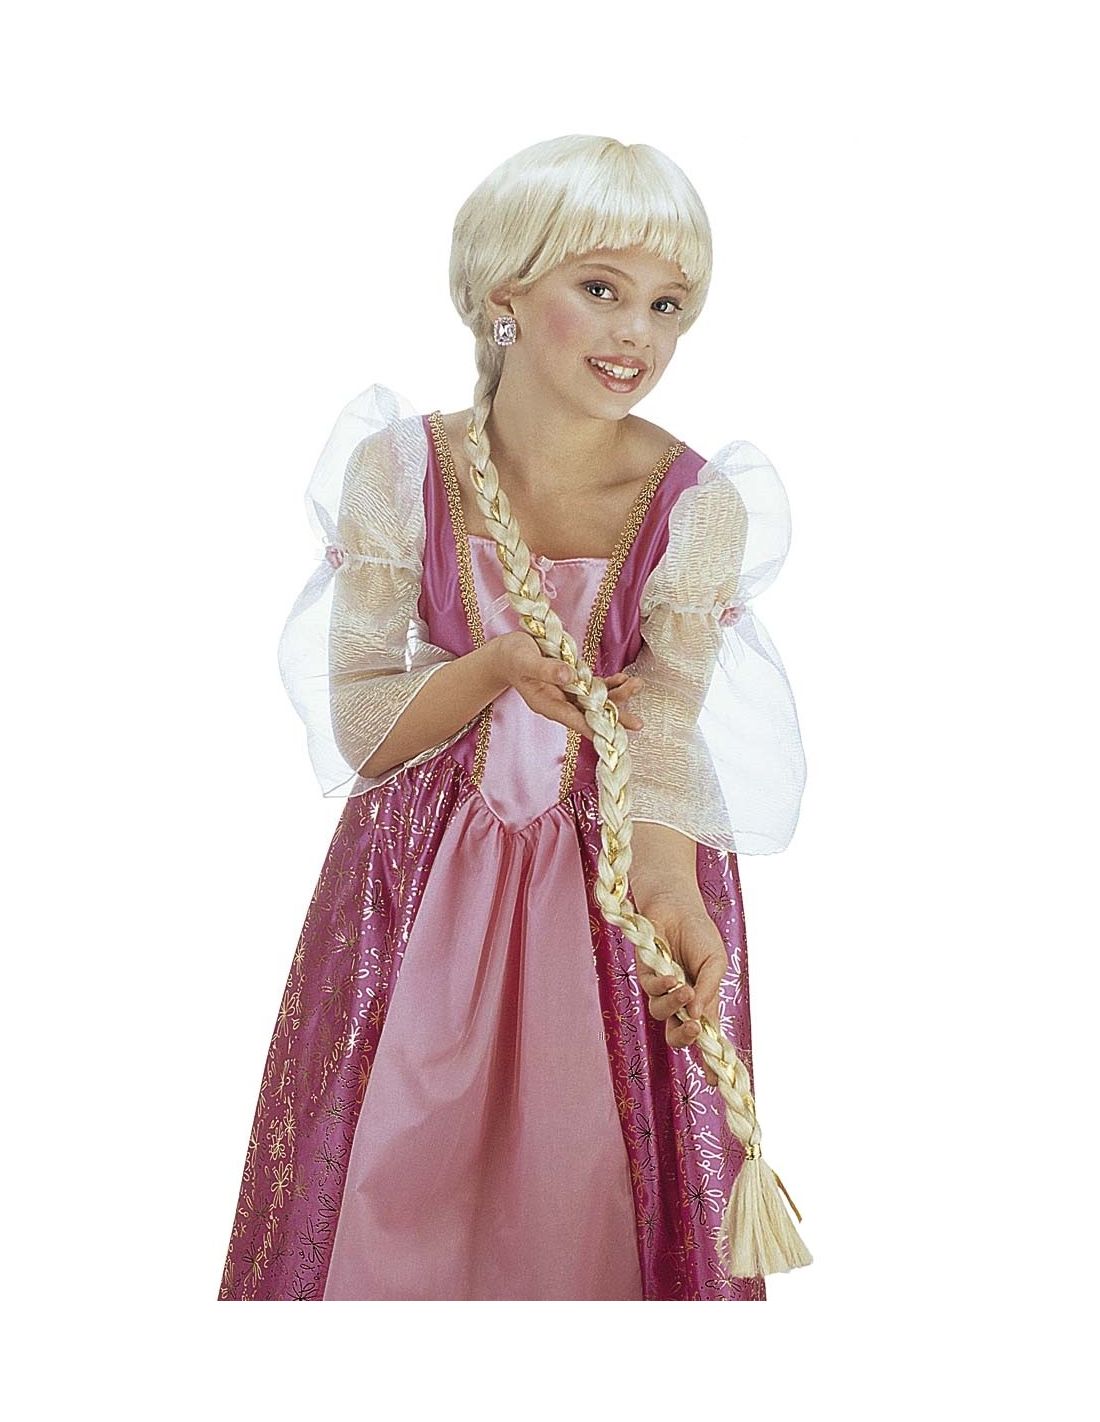 Organizar Dispuesto Mucho bien bueno Peluca Rapunzel infantil | Tienda de Disfraces Online | Mercadisfr...